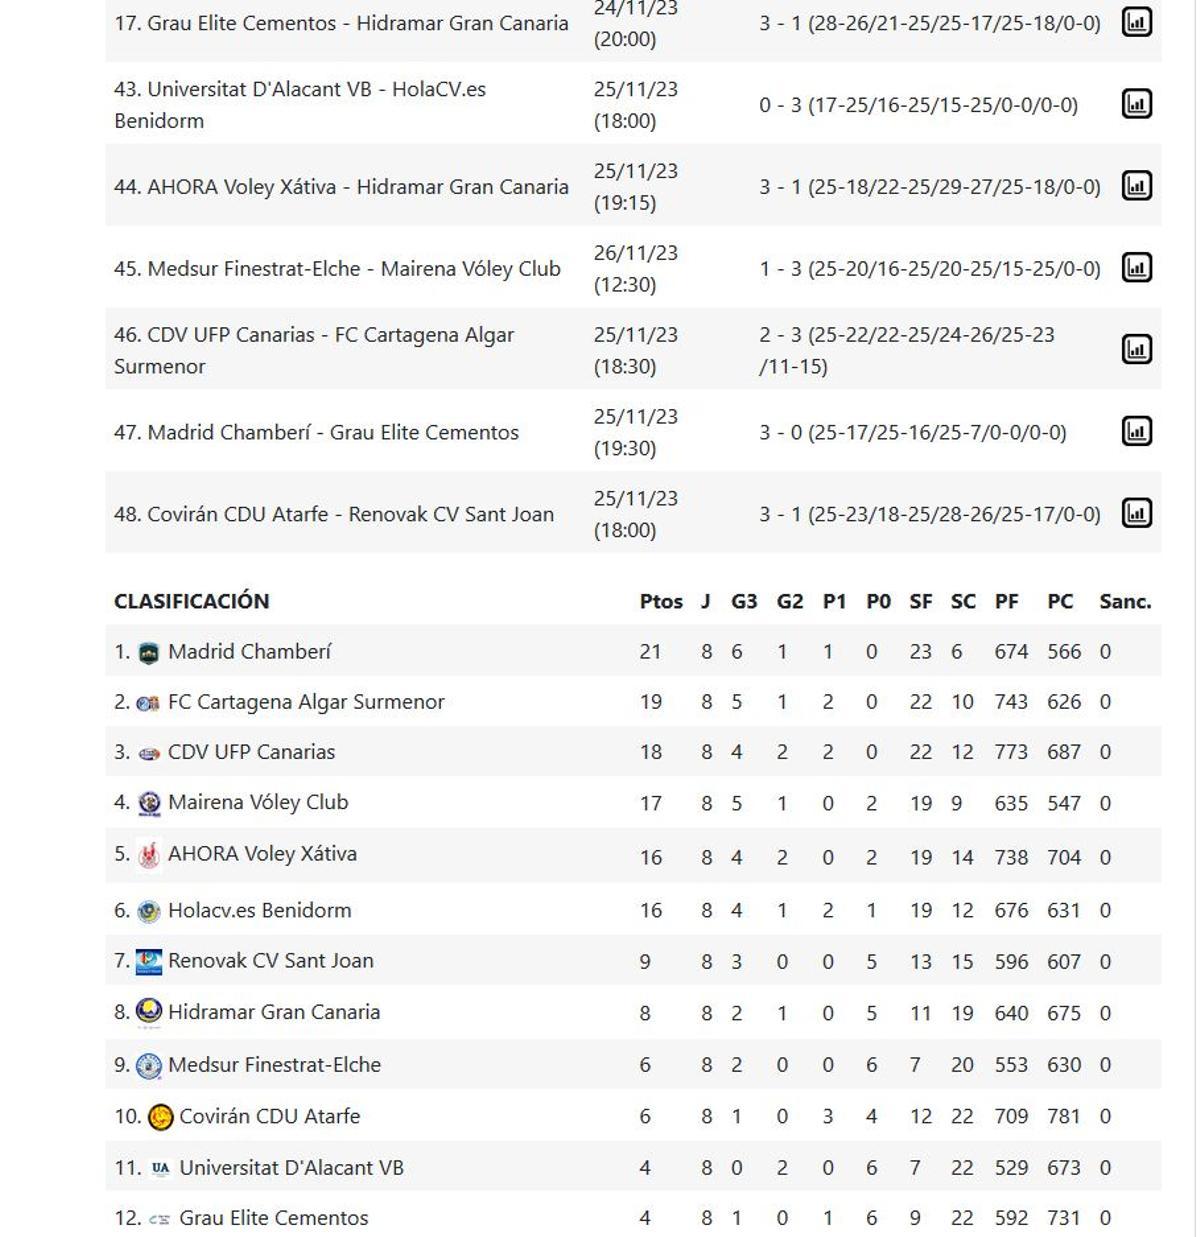 Resultados y clasificación dle Grupo C de la Superliga 2 Femenina.